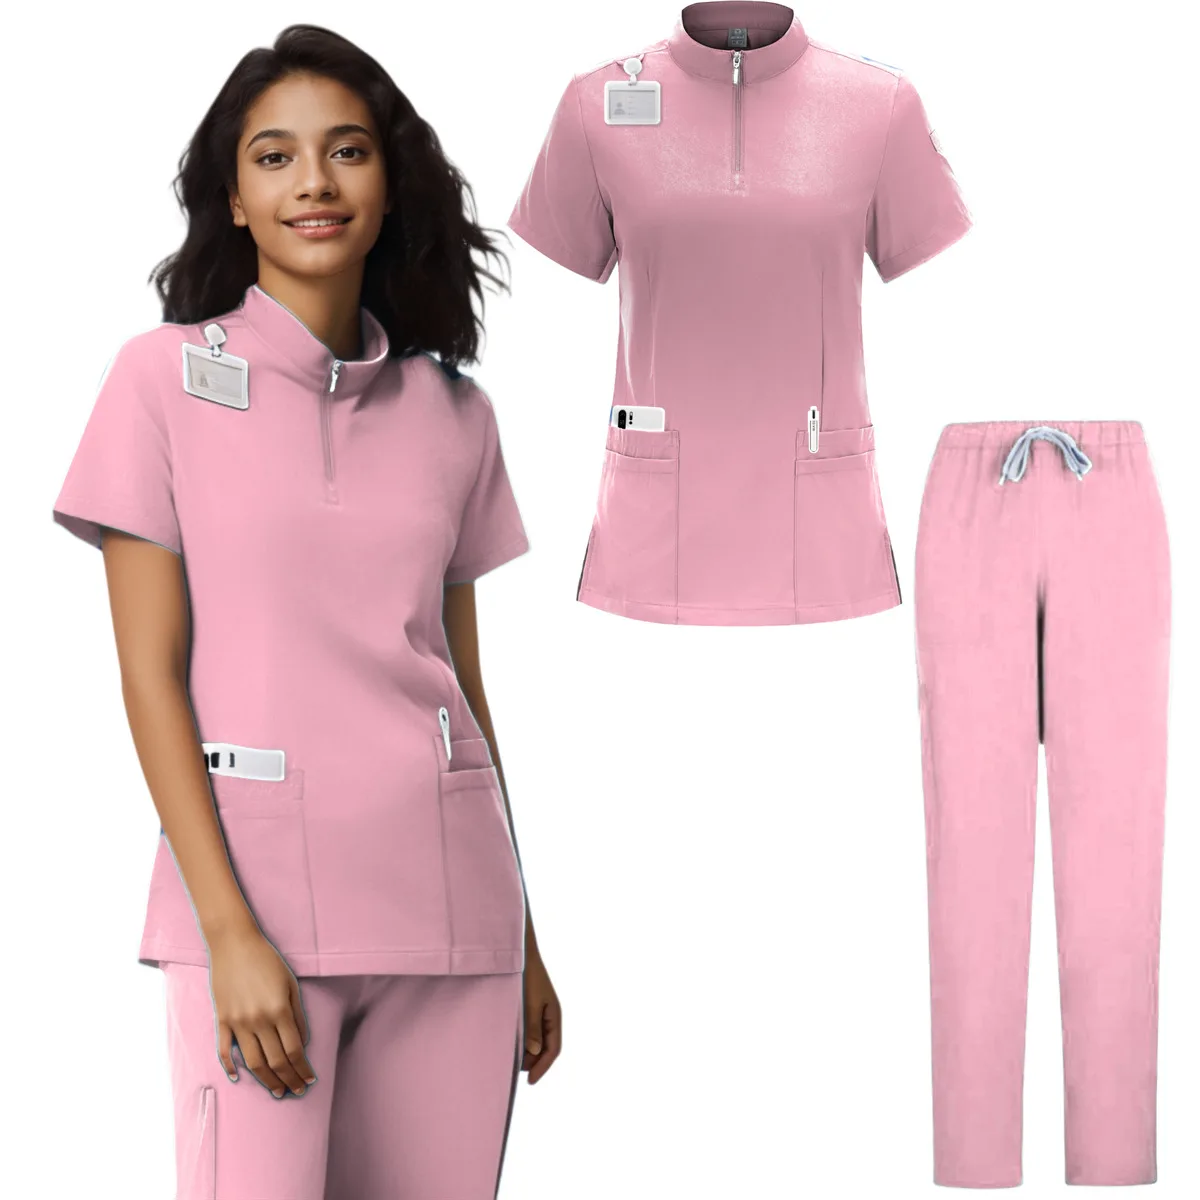 

Новая эластичная медицинская униформа, медицинские лабораторные куртки, унисекс медицинский костюм, медицинская одежда для женщин